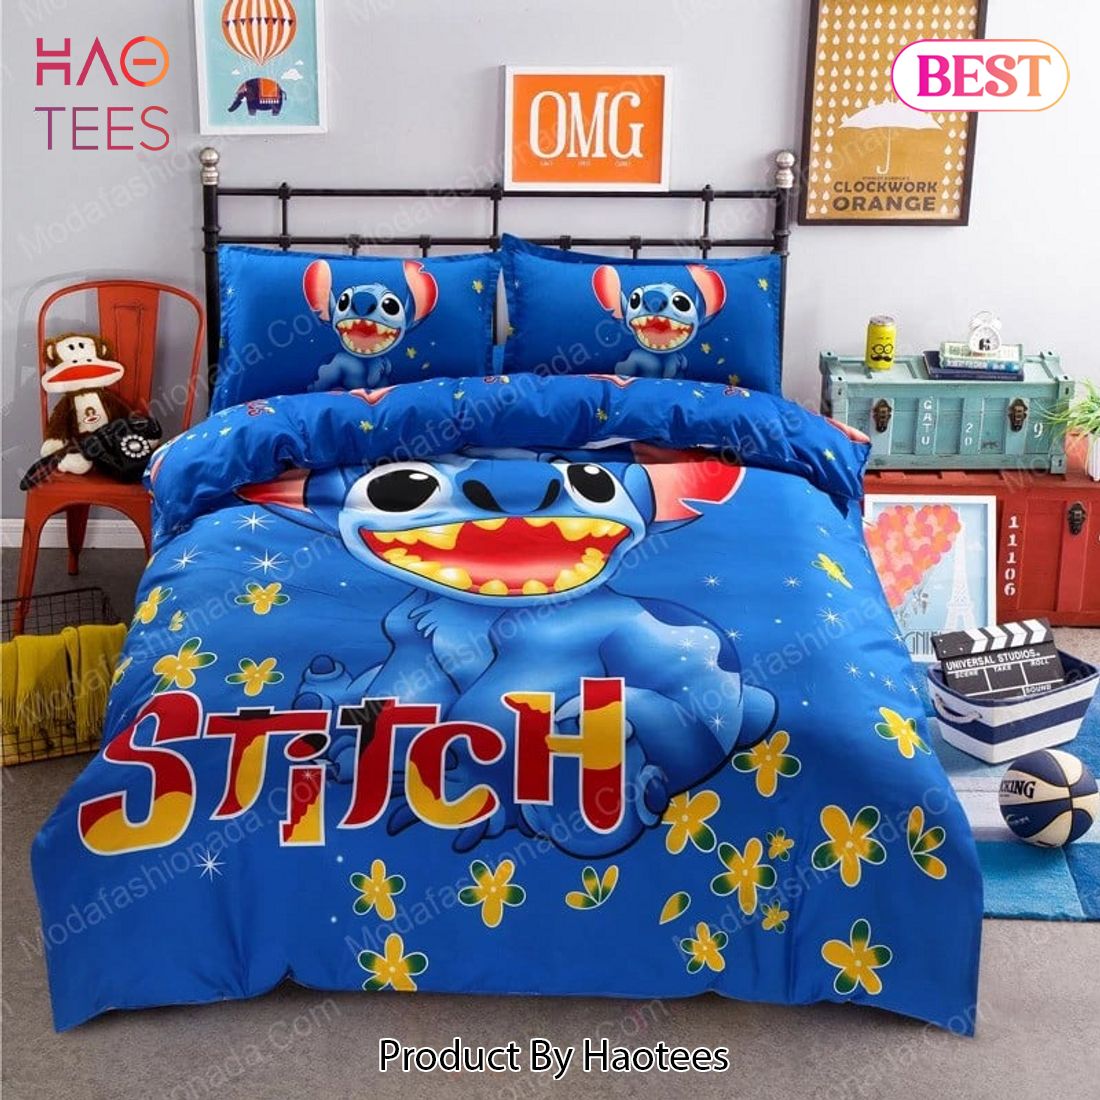 Buy Disney Cartoon Blue Kids 228 Bedding Sets Bed Sets, Bedroom Sets, Comforter Sets, Duvet Cover, Bedspread